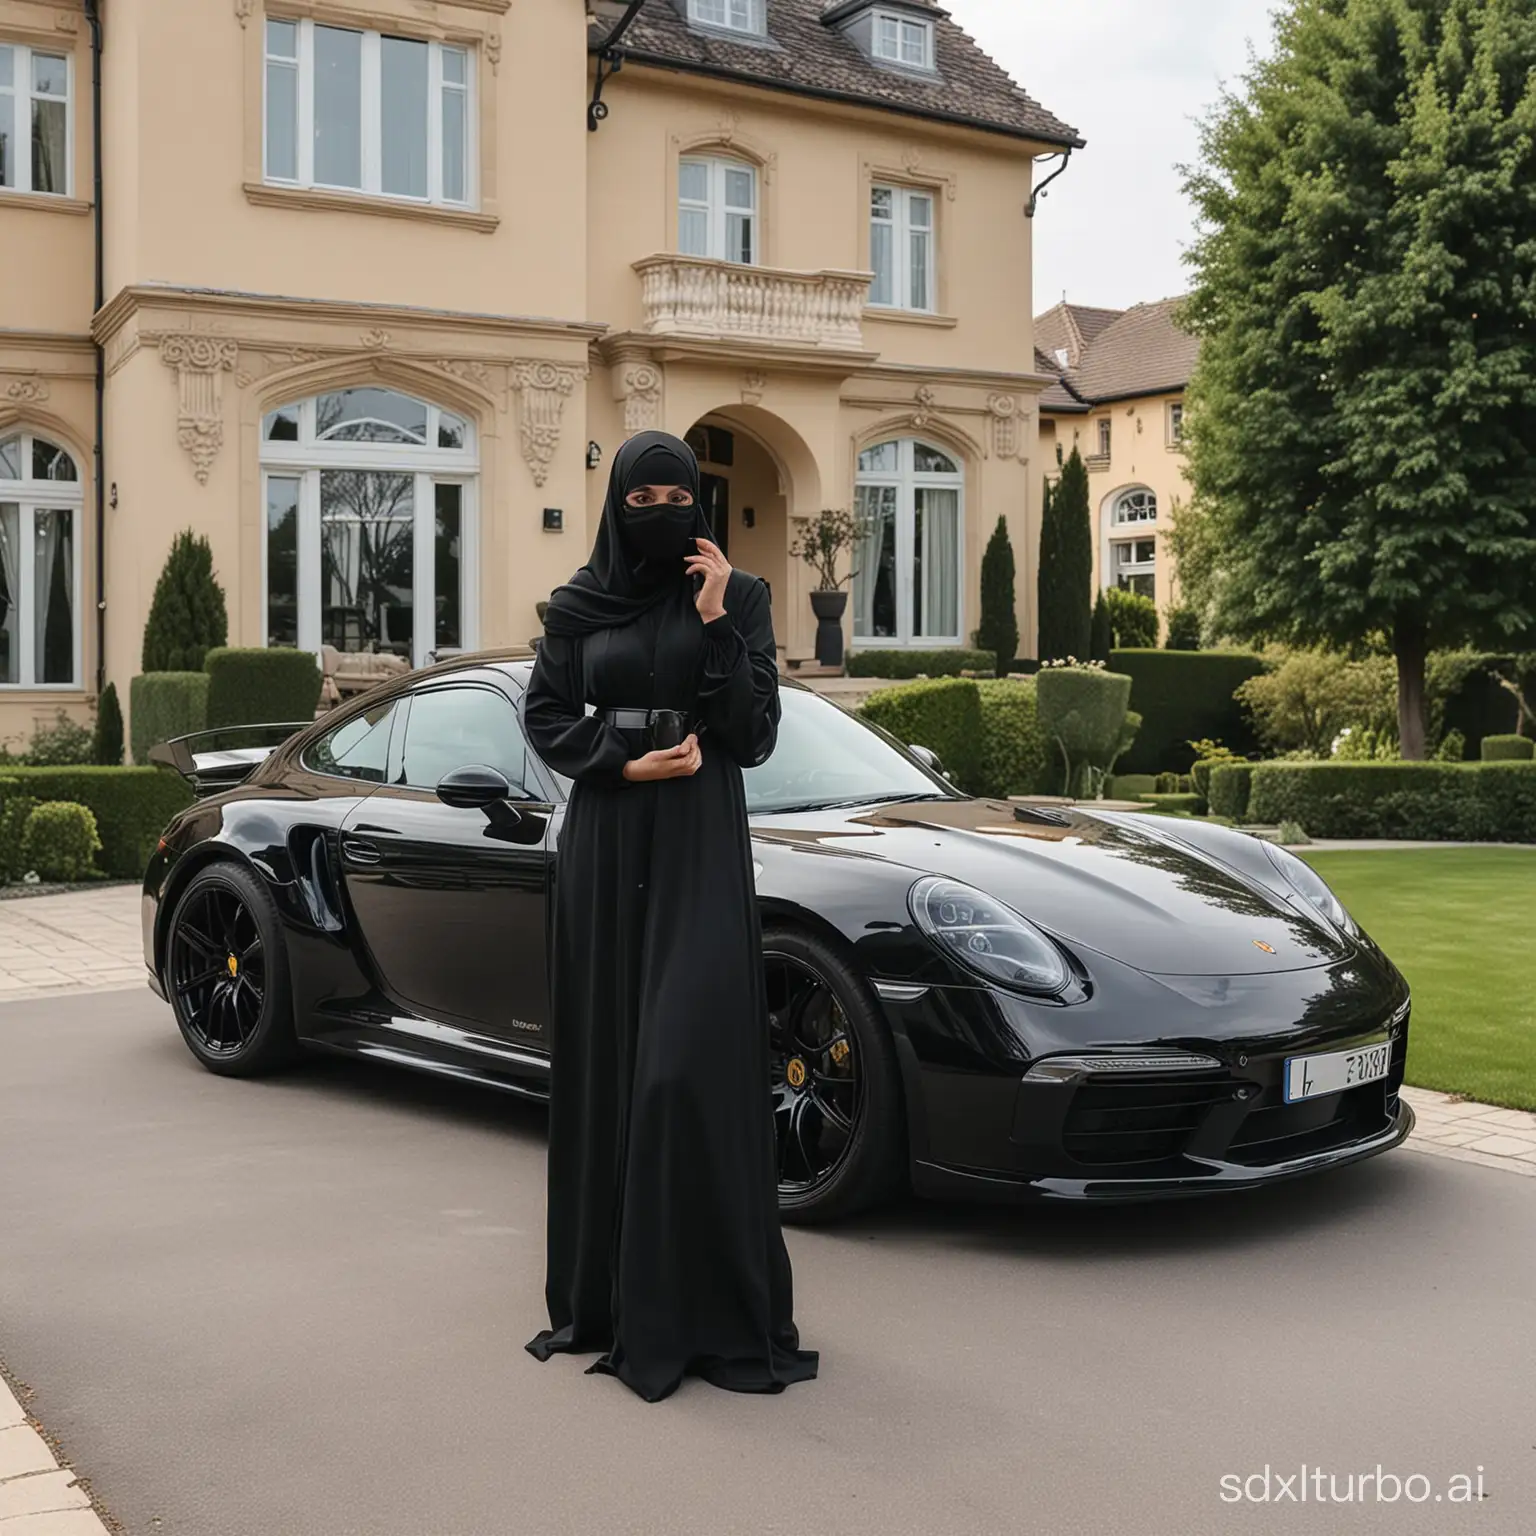 Sissy debout, full abaya noir, full niqab noir, bouche masquée.
En extérieur face à maison de luxe avec porsche 911 noire.